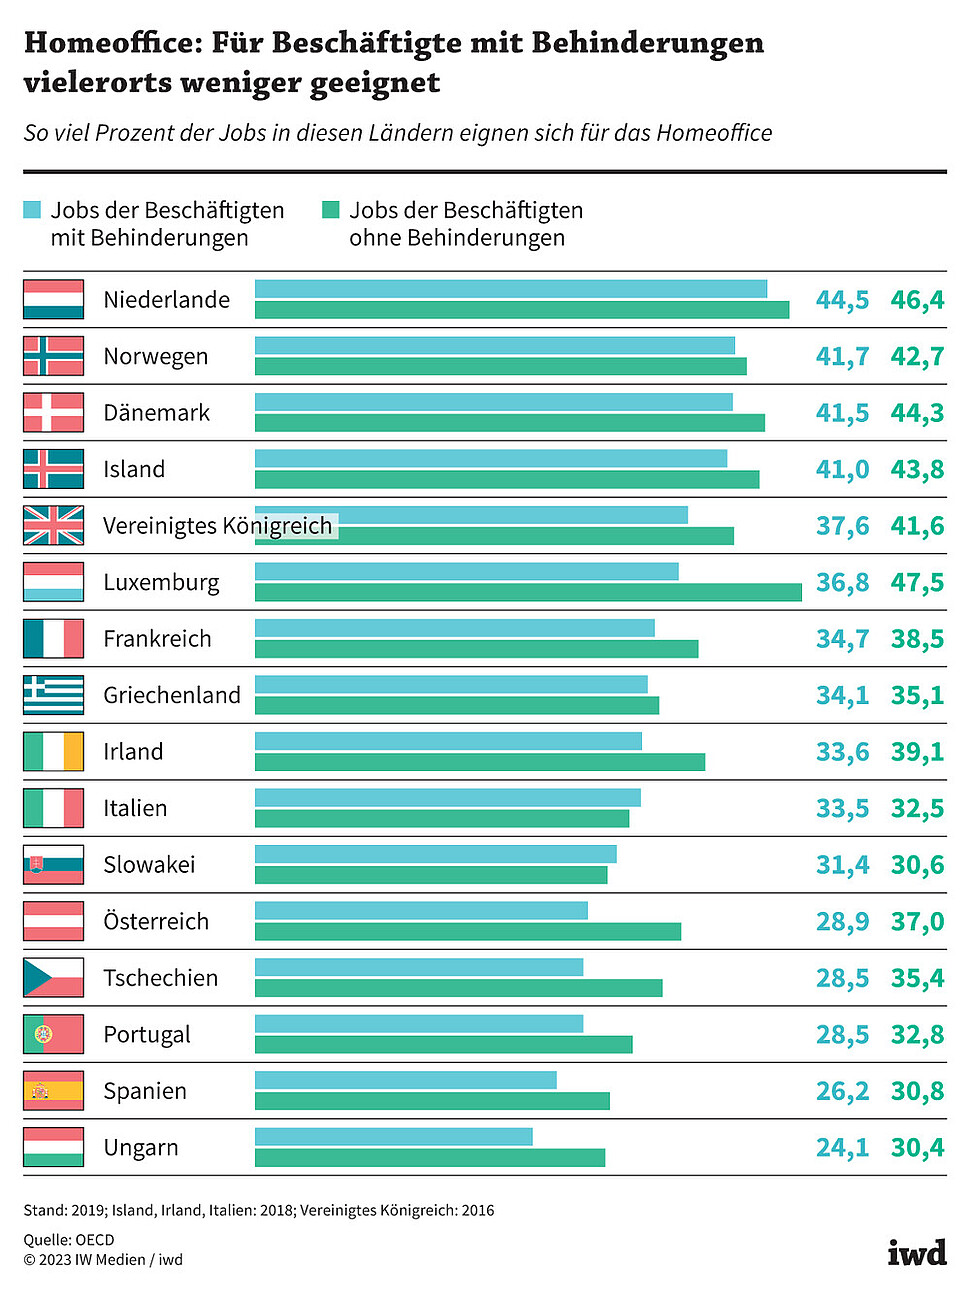 So viel Prozent der Jobs in diesen Ländern eignen sich für das Homeoffice